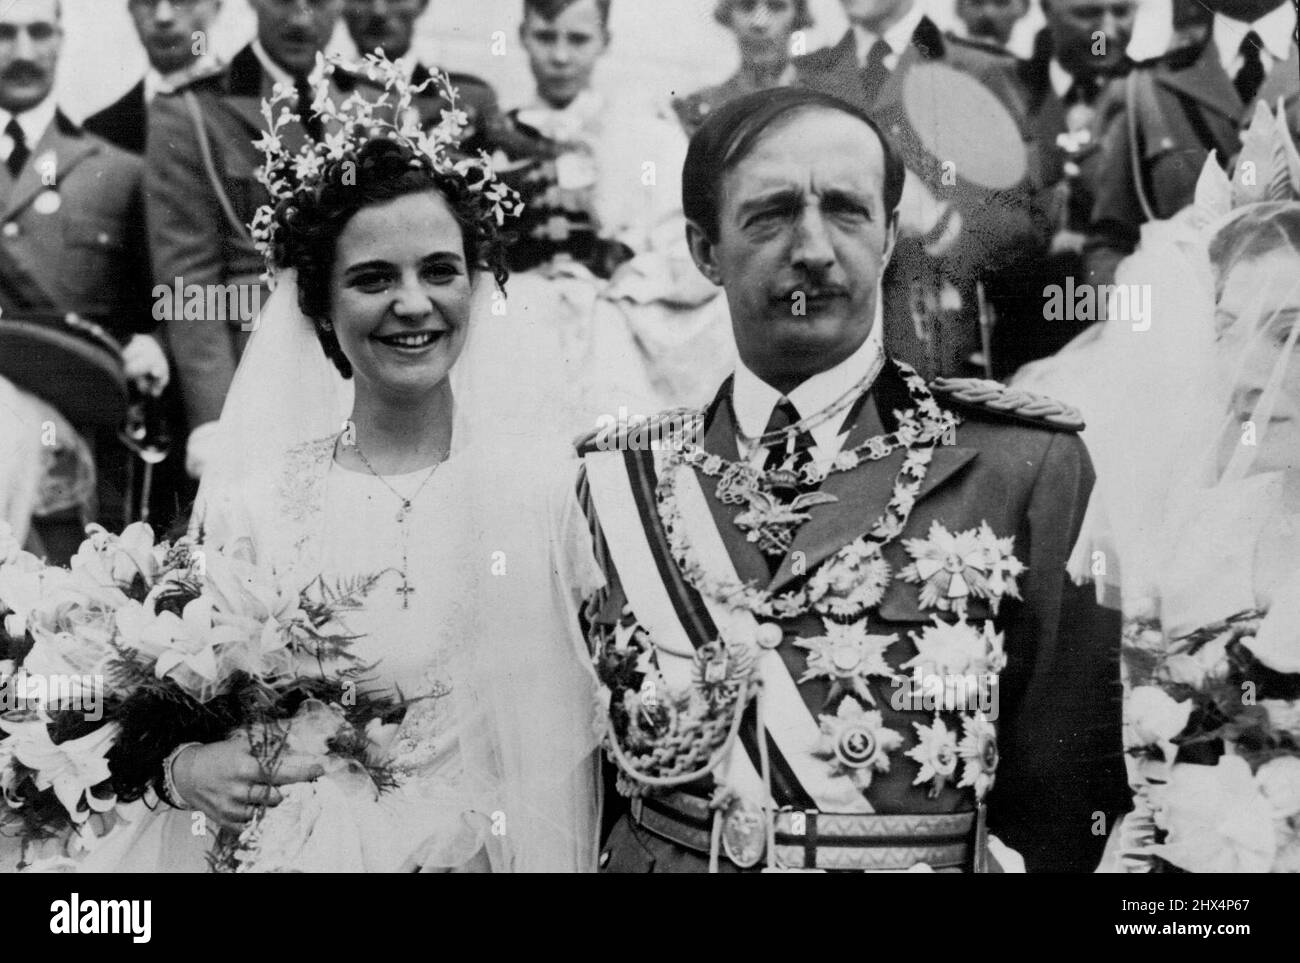 König Zog heiratet in einer einfachen Zeremonie in Tirana die „Weiße Rose von Ungarn“. In einer einfachen Zeremonie unter der Leitung von M. Evangheli, Präsident des albanischen Parlaments, im einstöckigen Königspalast in Tirana wurde König Zog der Albaner mit der 22-jährigen Gräfin Geraldine Apponyi verheiratet, die Mitglied einer alten ungarischen Familie ist und für ihre Schönheit als „Weiße Rose von Ungarn“ bekannt ist. Die Gräfin wird die erste Königin der Albaner. Ihre Mutter war eine Amerikanerin, Gladys Virginia Stewart, aus New York. Graf Ciano, italienischer Außenminister, war Zeuge der Zeremonie. 28. April 1938. Stockfoto